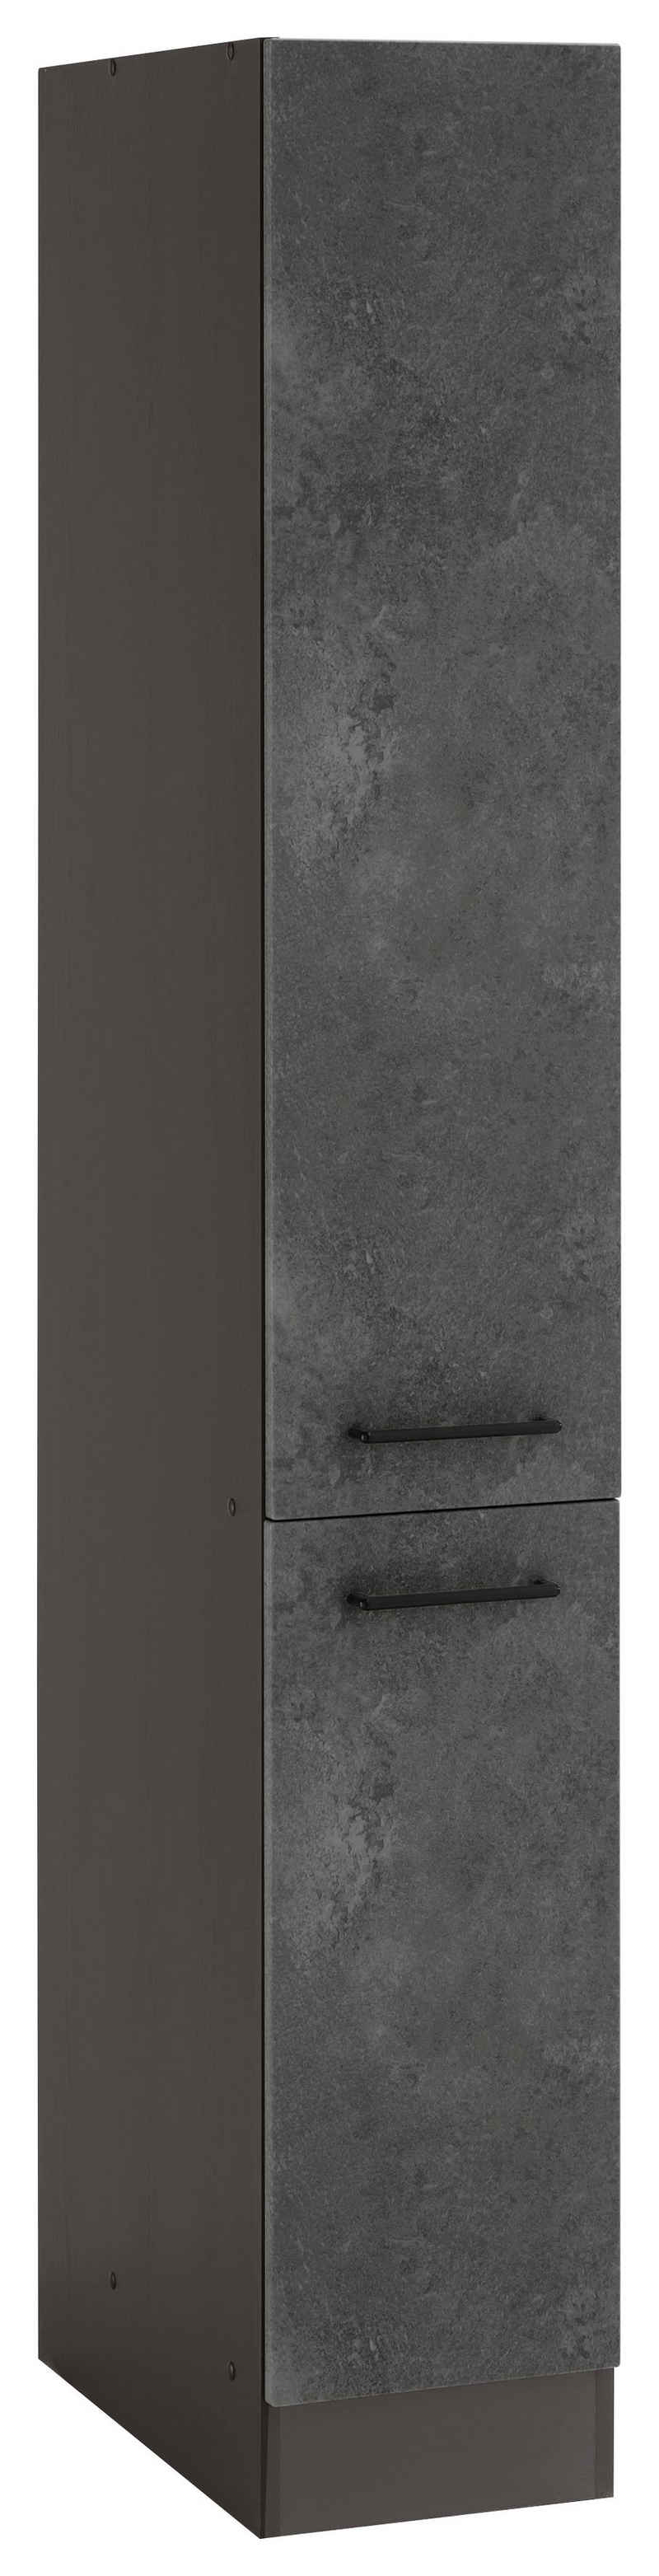 HELD MÖBEL Apothekerschrank »Tulsa« Breite 30 cm, Höhe 200 cm, 2 Auszügen, schwarzer Metallgriff, MDF Front